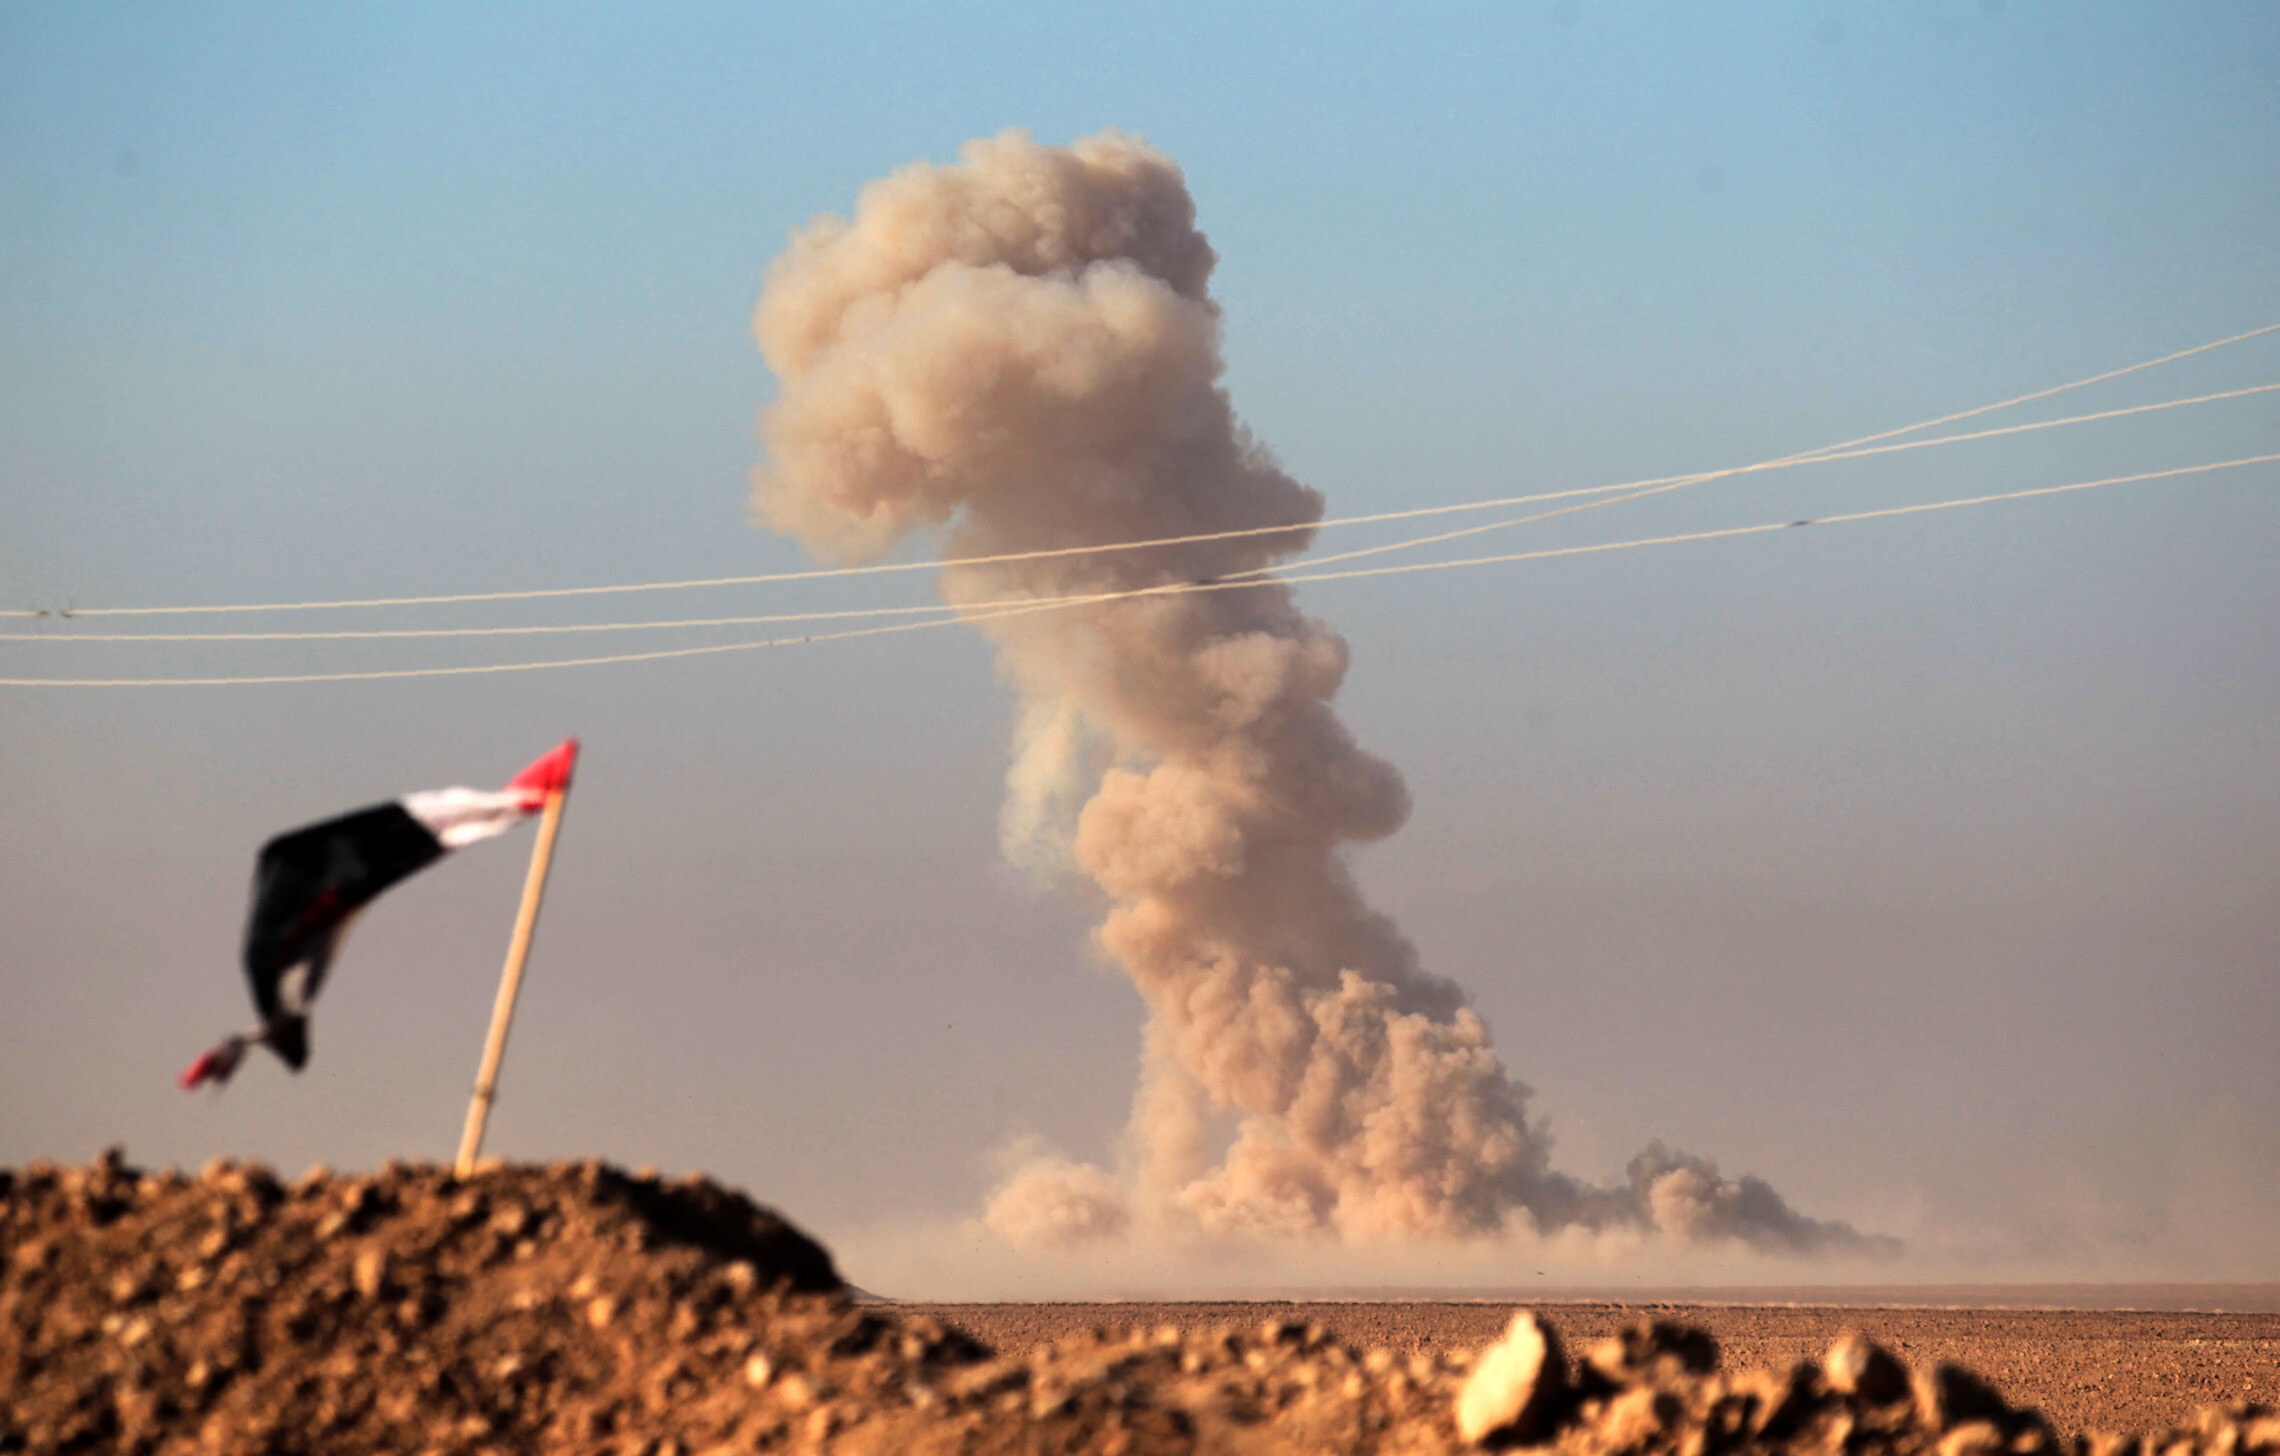 עשן מיתמר בעקבות פיצוץ של מכונית תופת של דאעש באזור העיר טל עפר, סוריה, 25 בנובמבר 2016 (צילום: AHMAD AL-RUBAYE / AFP)